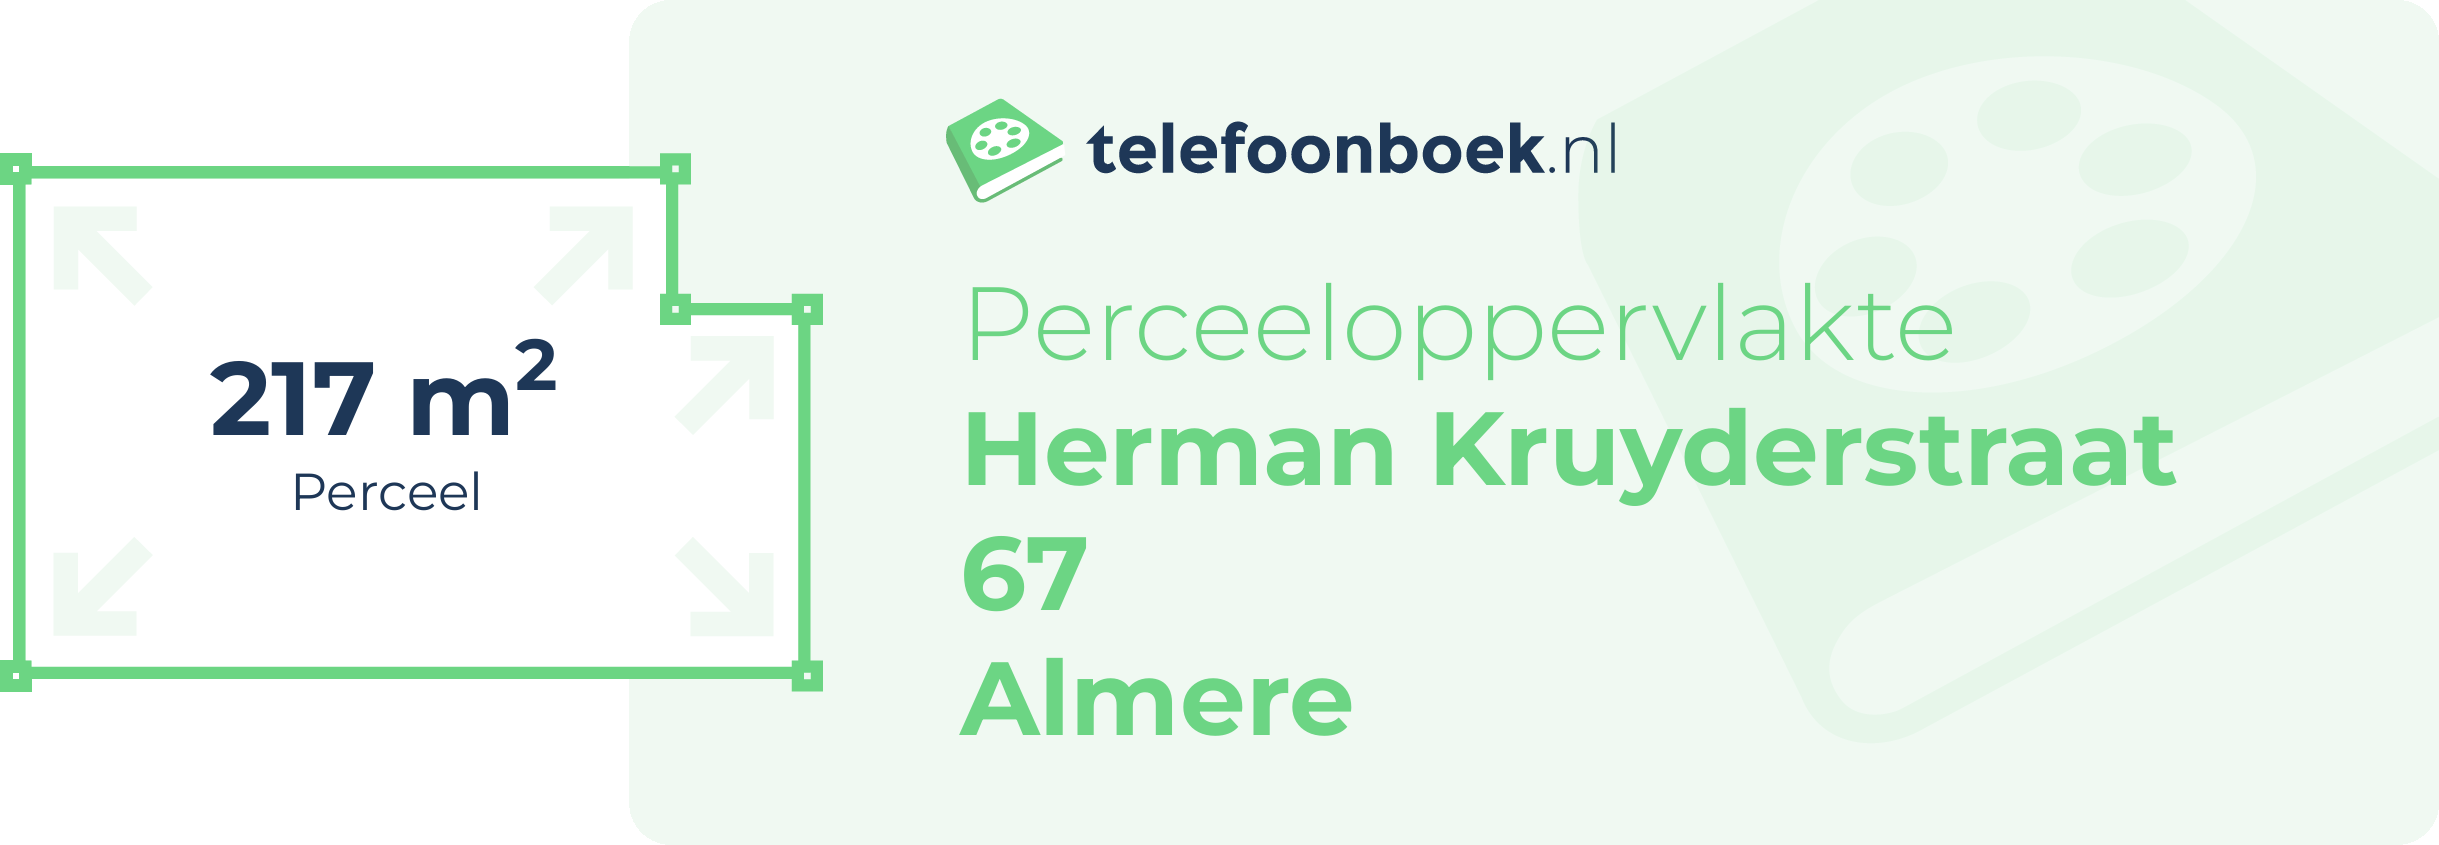 Perceeloppervlakte Herman Kruyderstraat 67 Almere